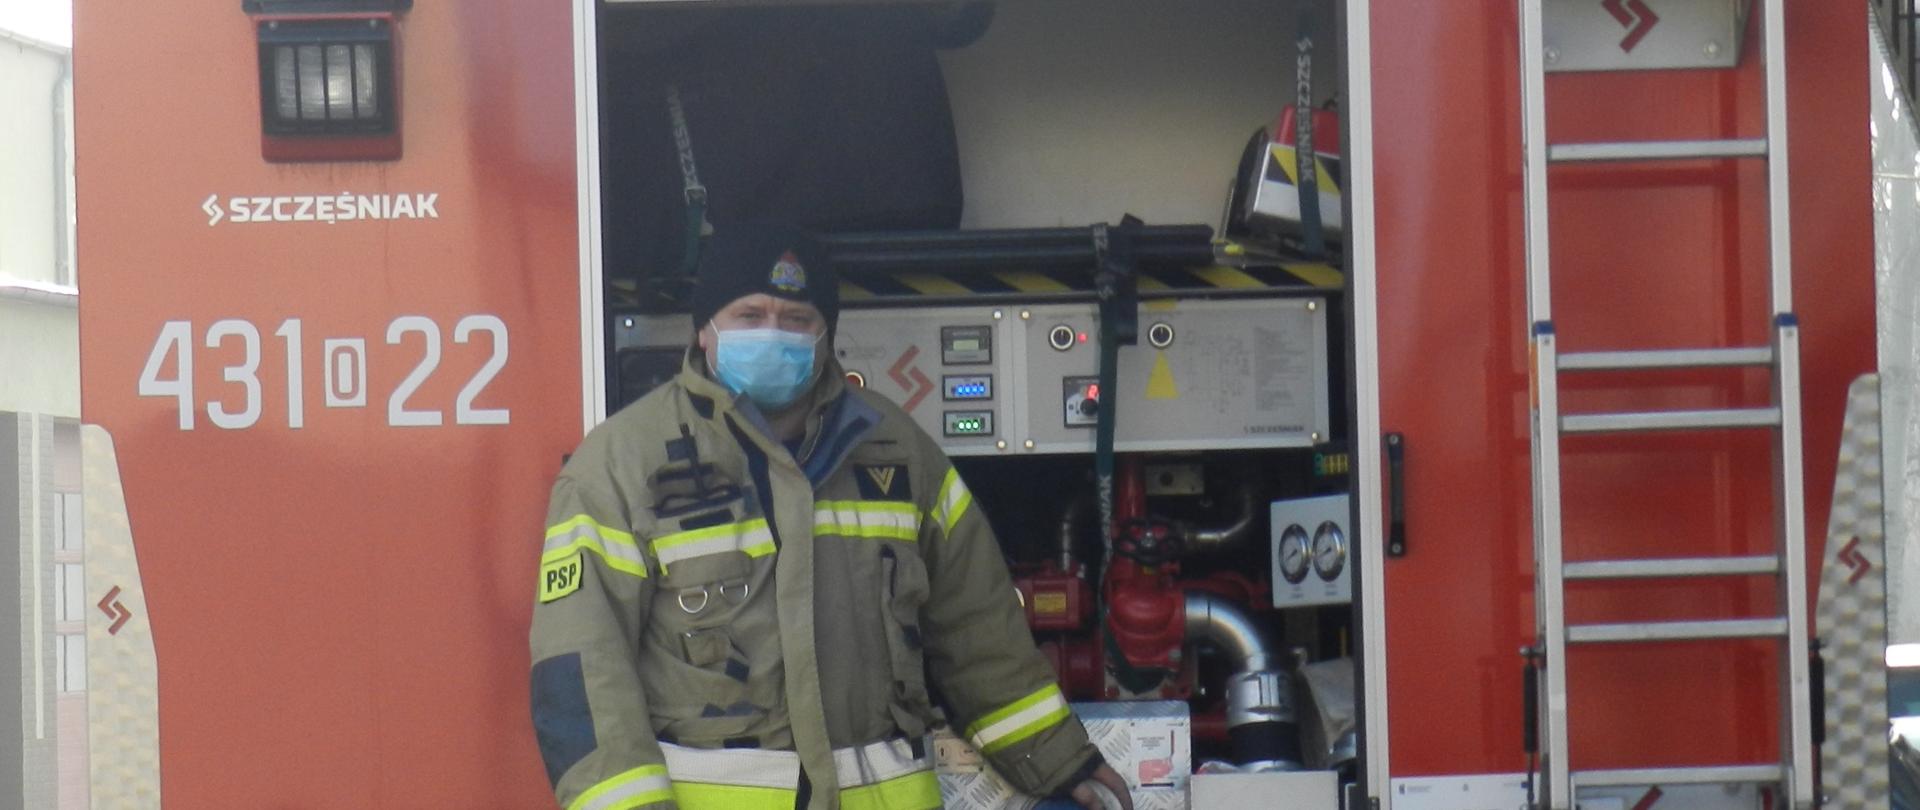 Zdjęcie przedstawia pojazd pożarniczy z operatorem autopompy umieszczonym na środku fotografii podczas ćwiczeń